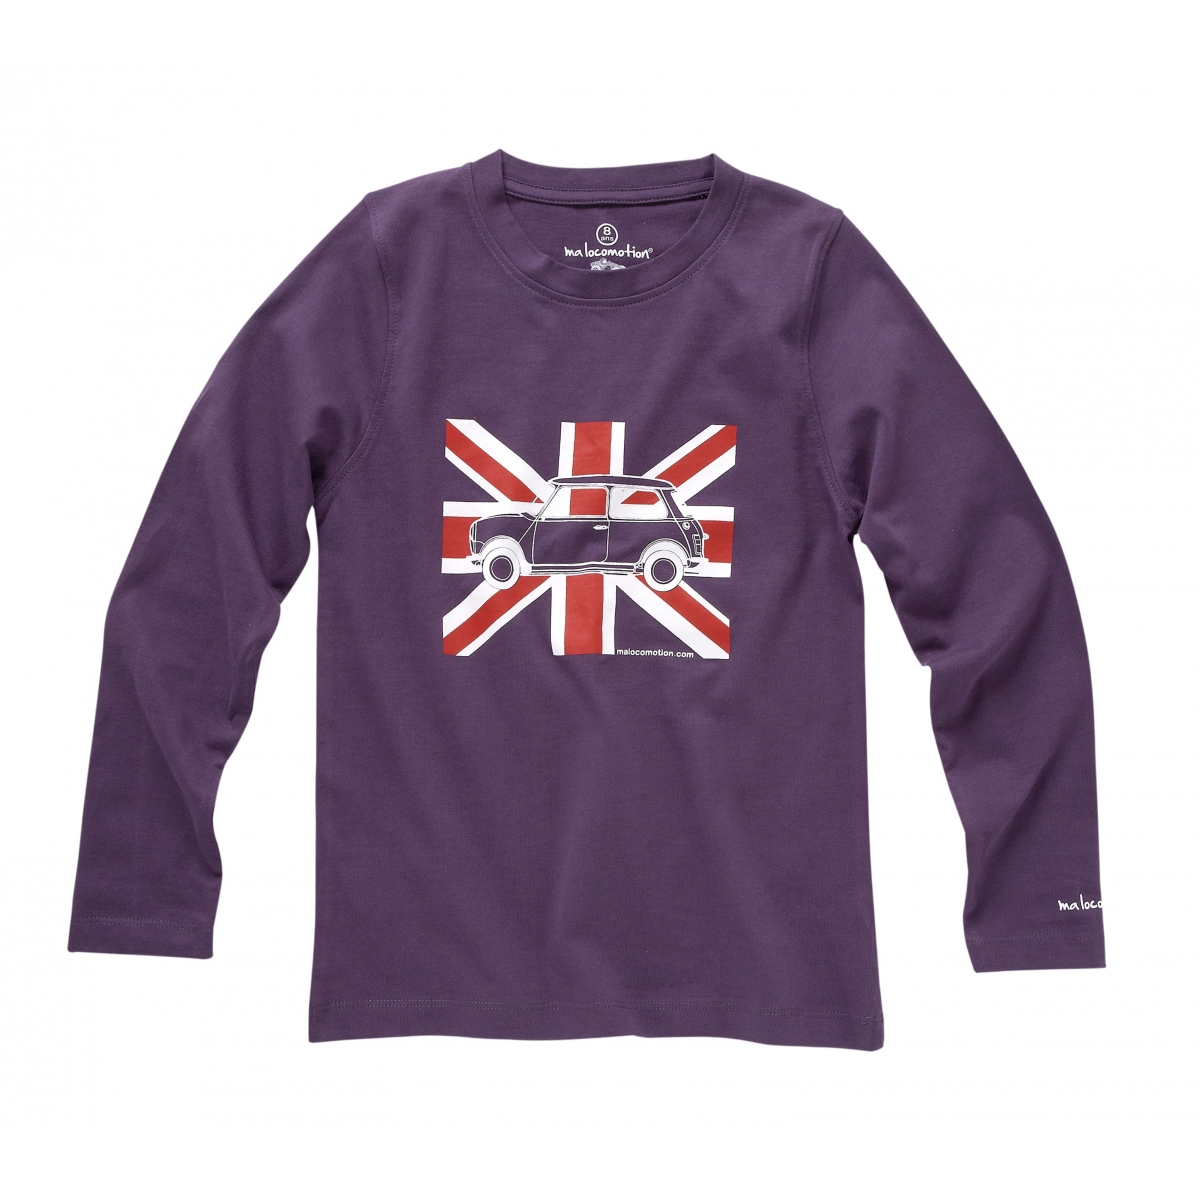 Long sleeves Austin Mini Union Jack purple t-shirt for kids